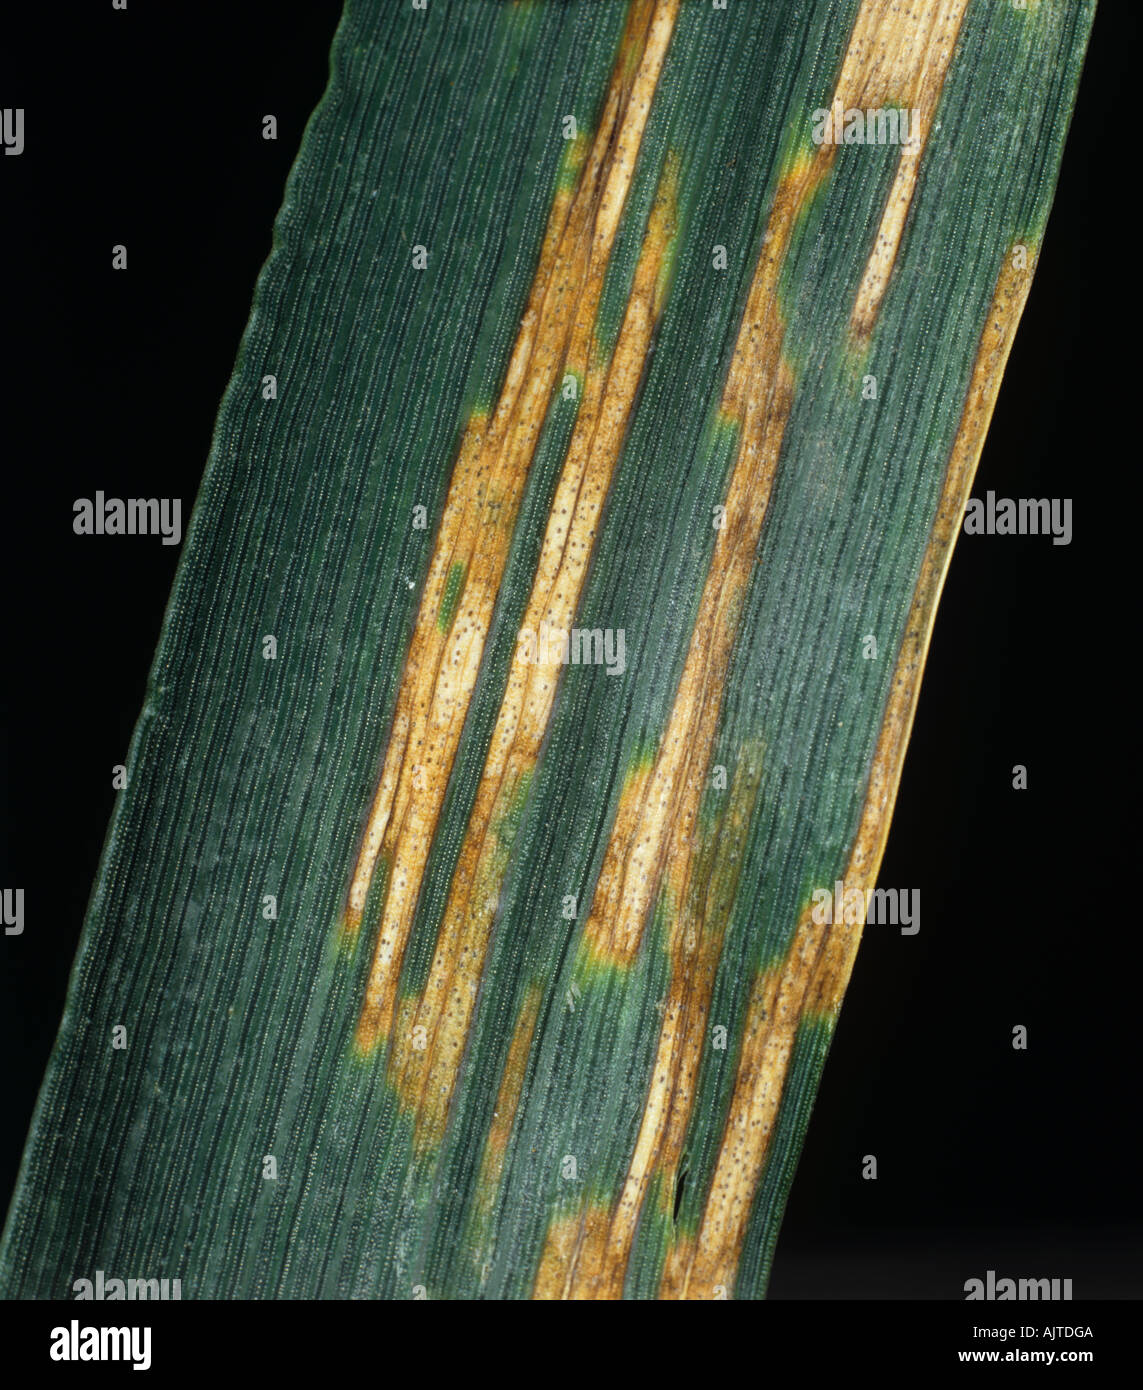 Septoria foglia macchia Zymosettoria tritici syn Mycosphaerella graminicola sul grano Foto Stock